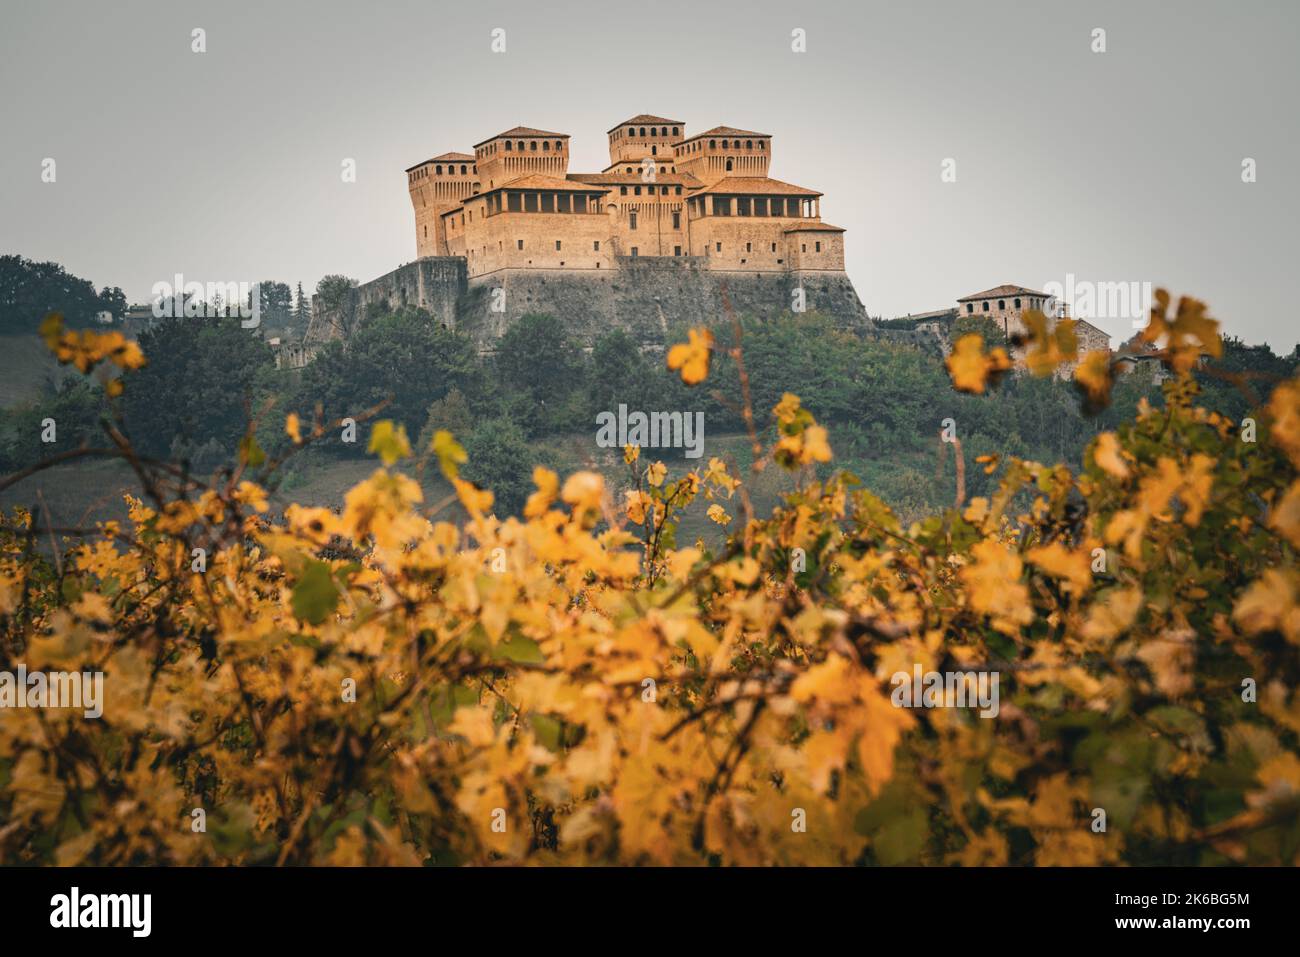 Parme, Italie,13.10.2022: Célèbre château de Torrechiara avec vignobles aux couleurs de l'automne Banque D'Images